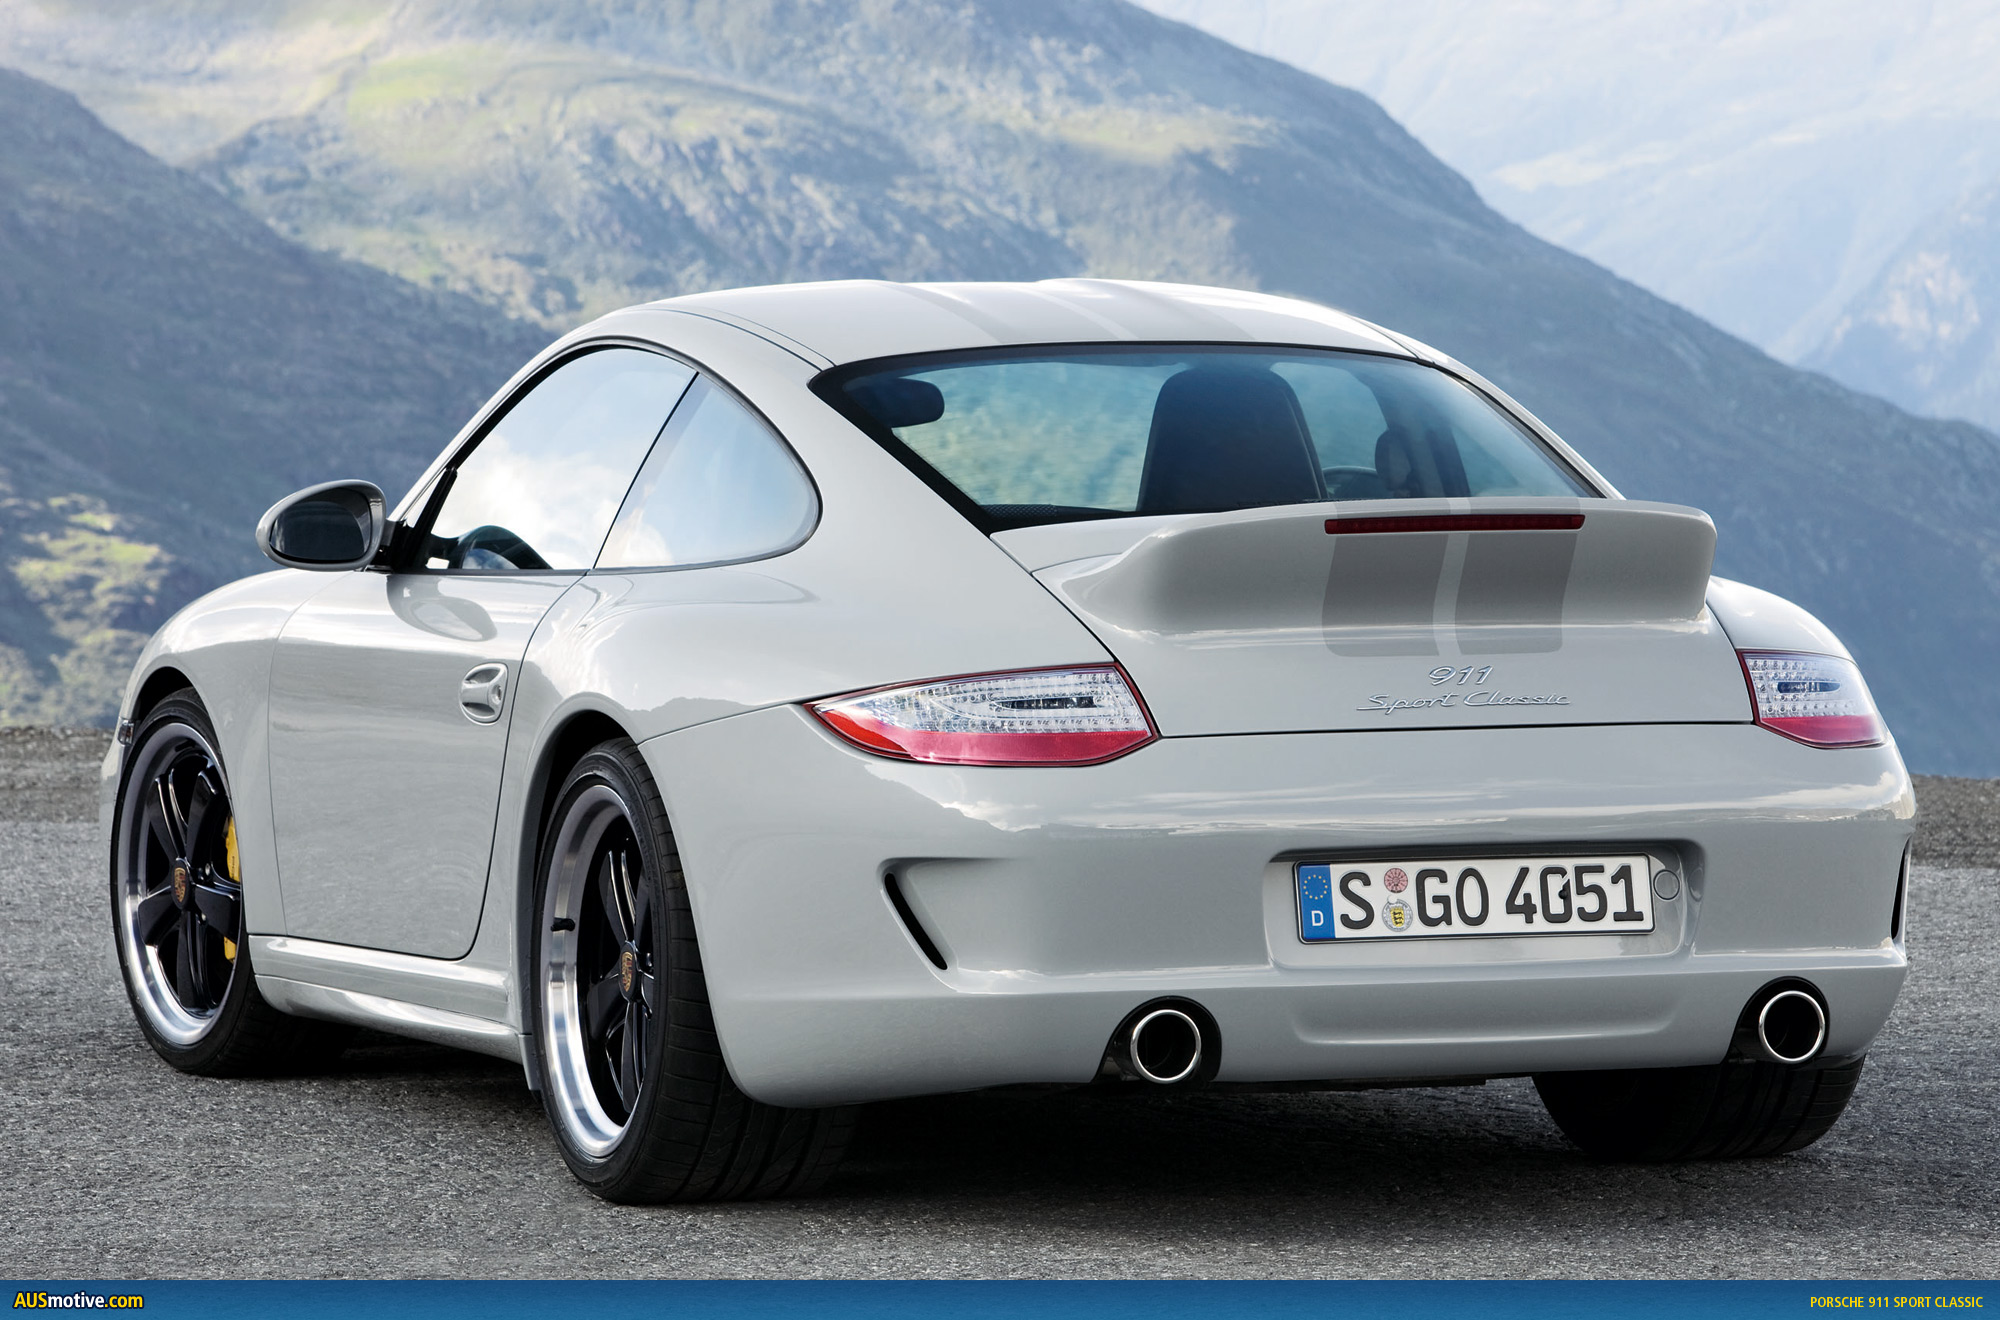 AUSmotive.com » Porsche 911 Sport Classic